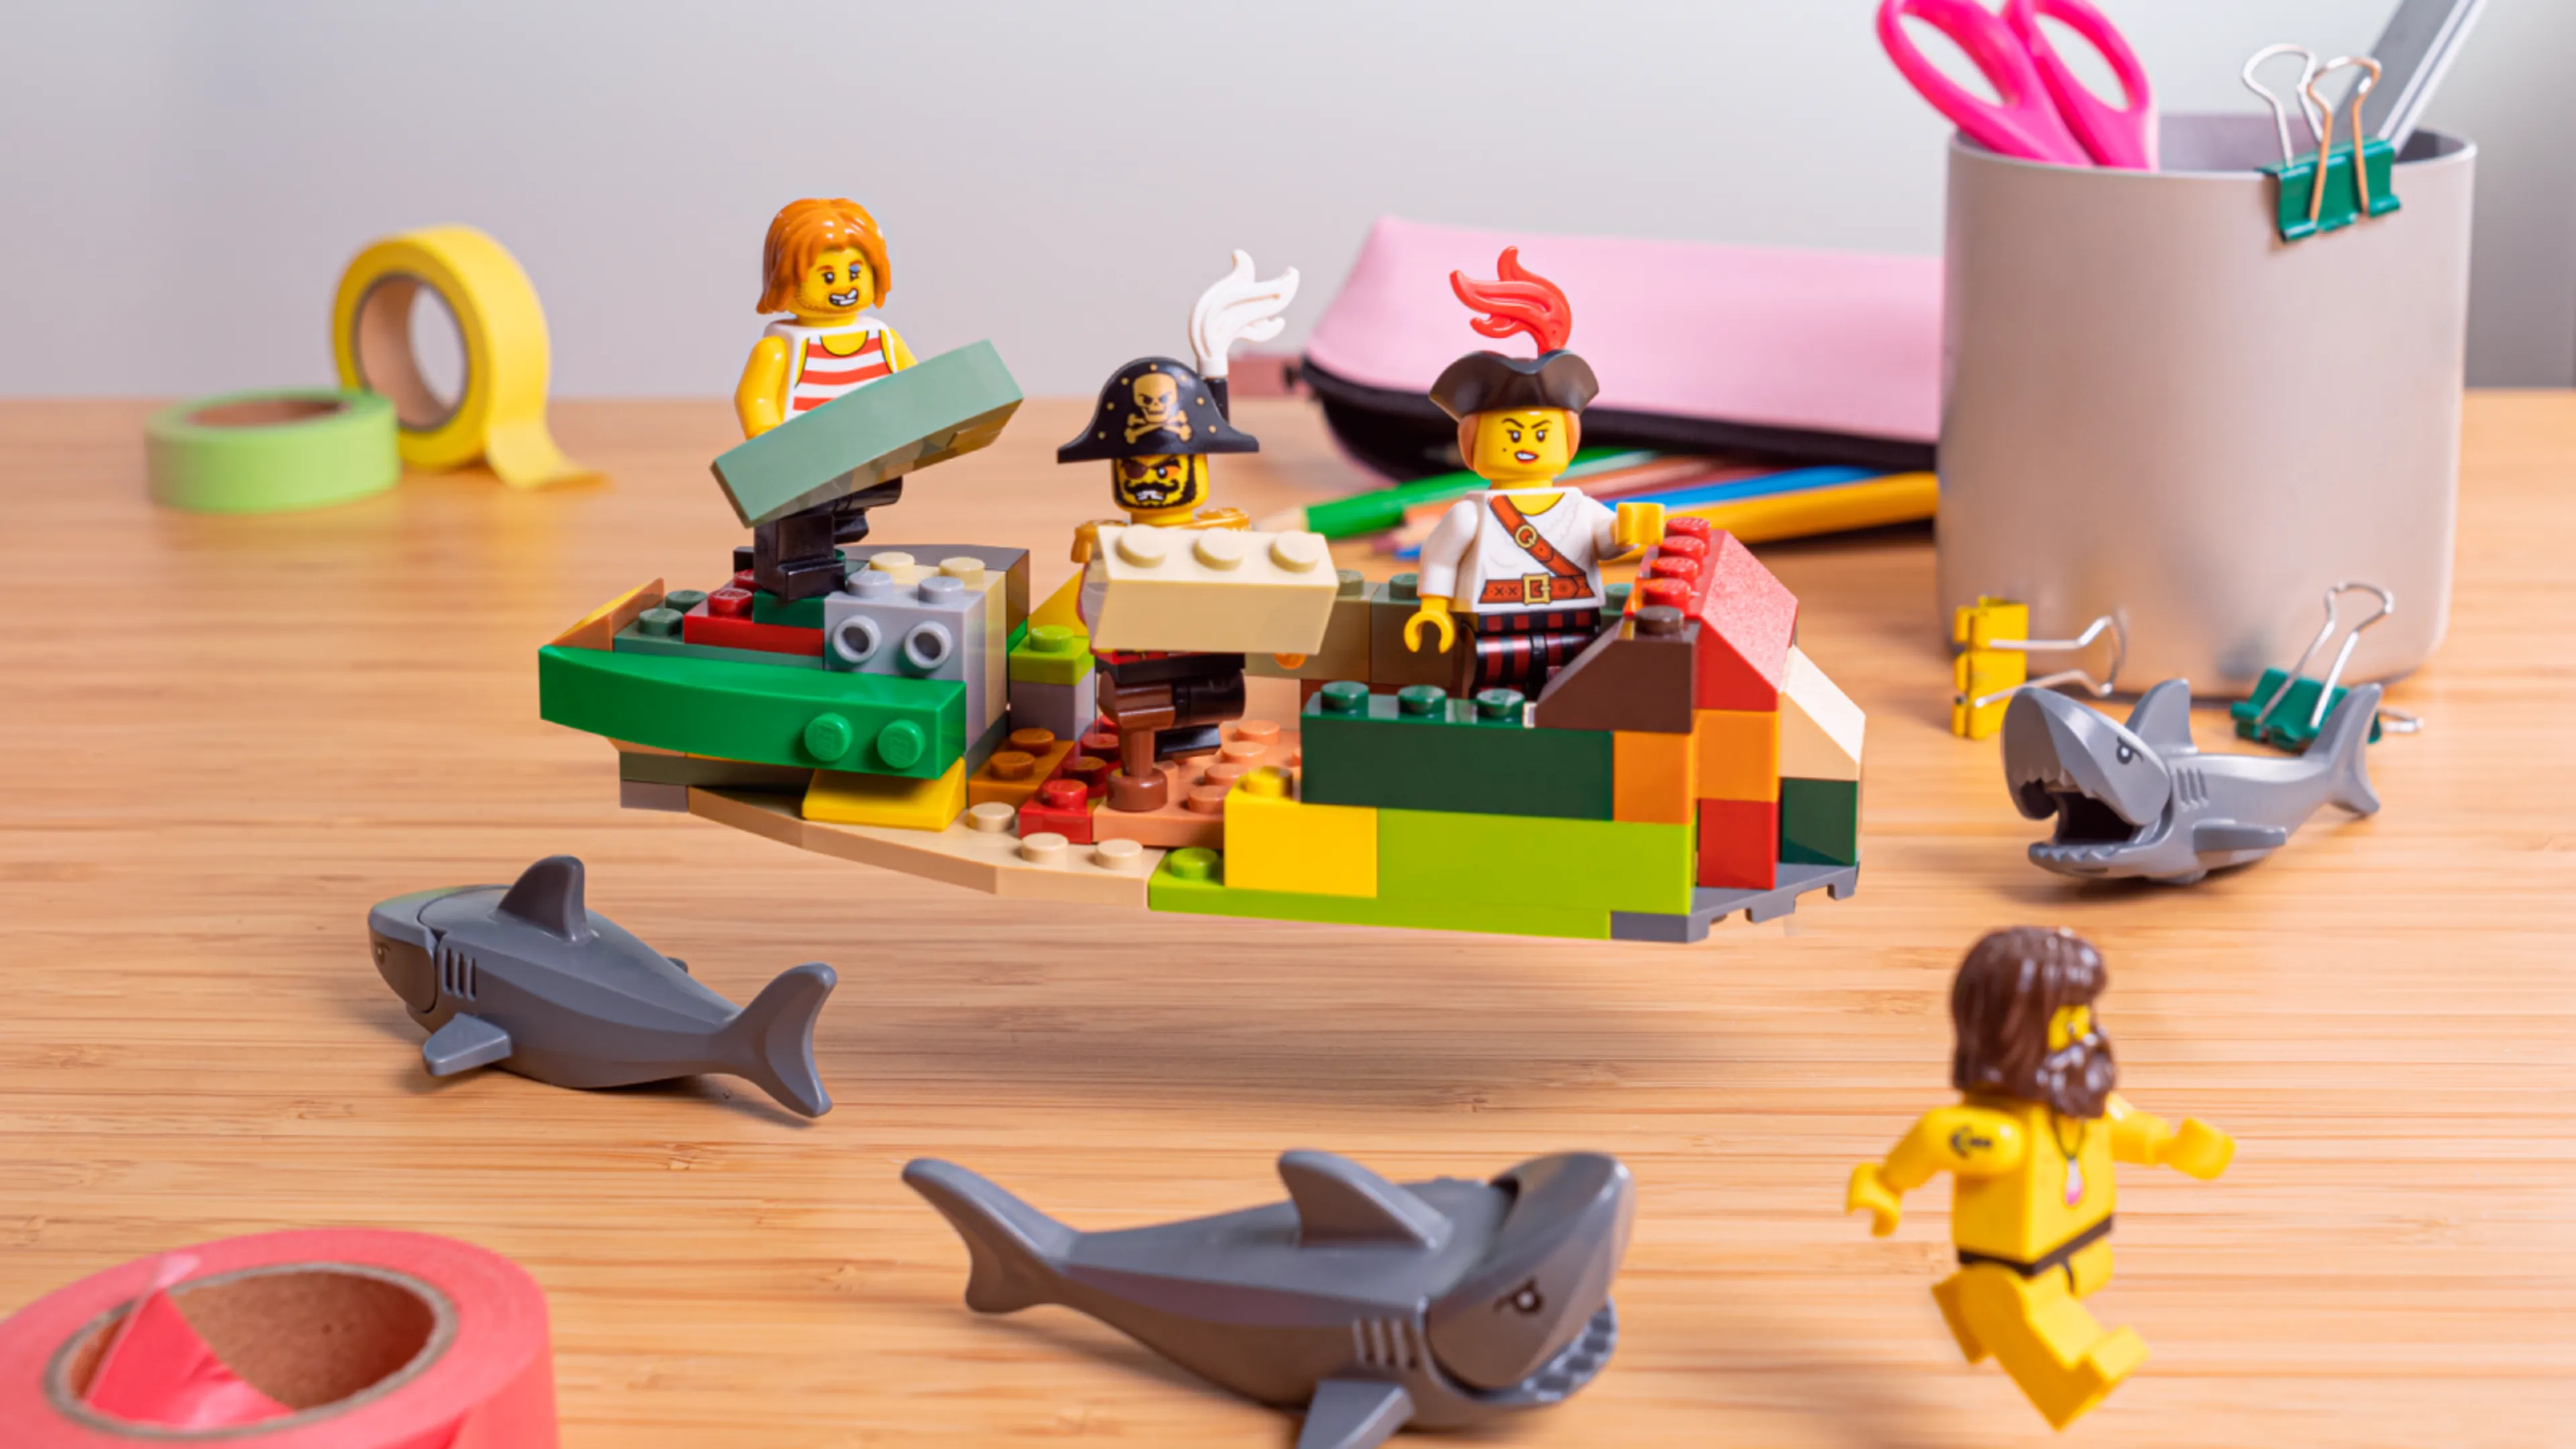 Minifigurer som bygger skeppets sidor, omgivna av hajar